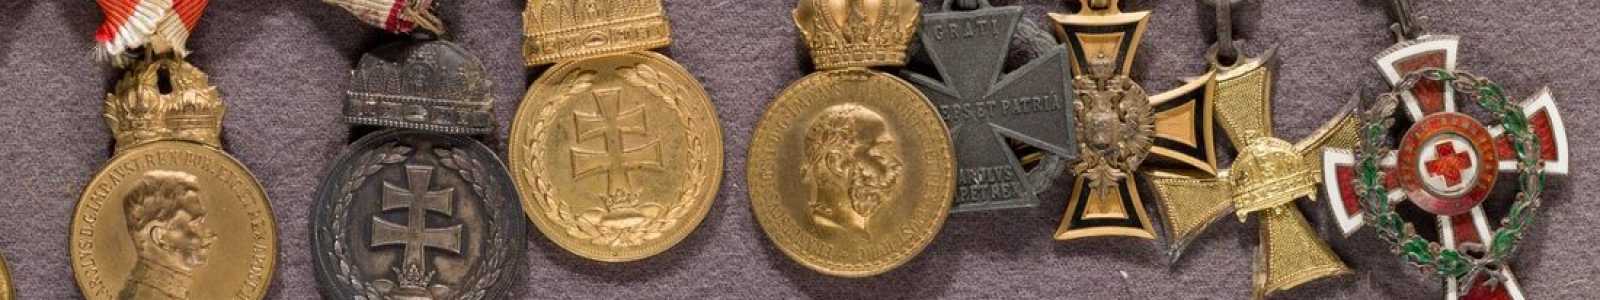 A82m - Médailles internationales et objets de collection d'histoire militaire